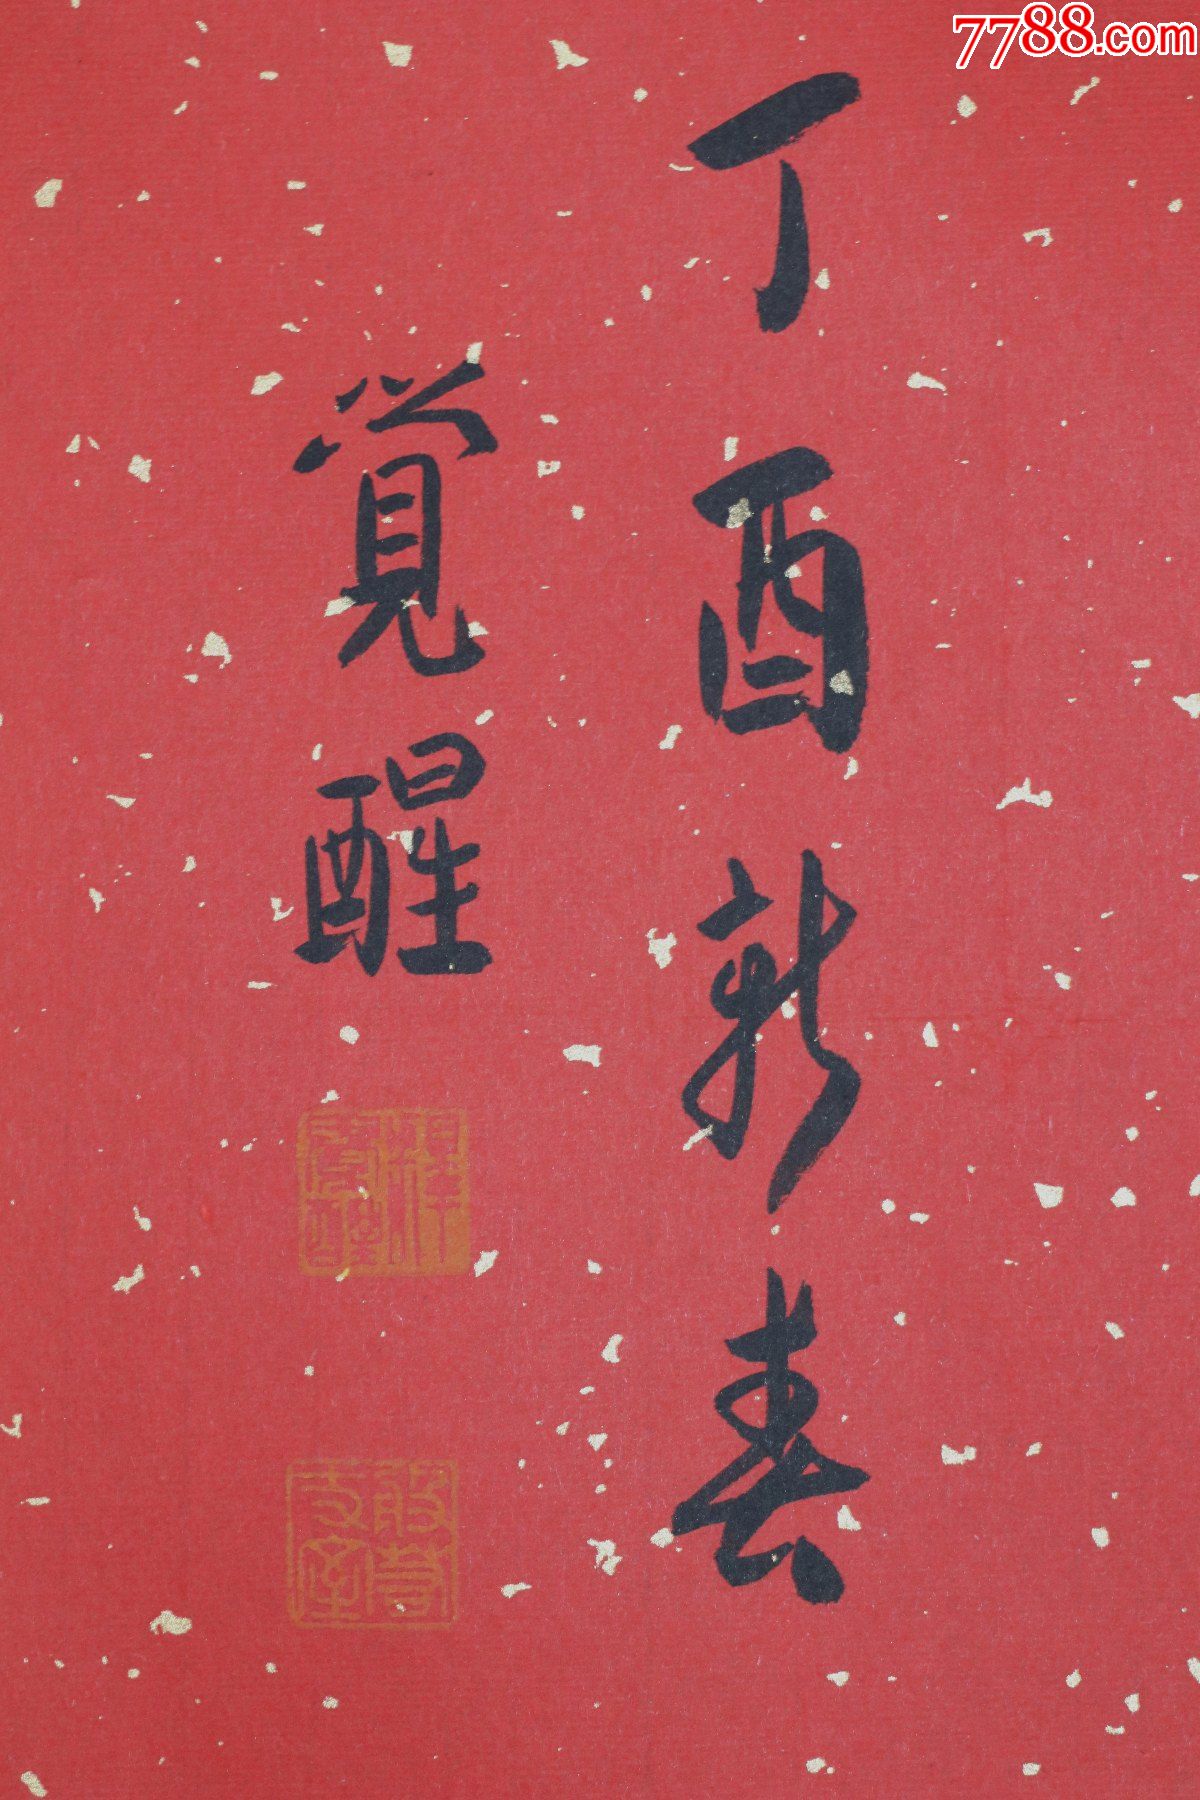 觉醒法师,中国佛教协会副会长,上海玉佛禅寺方丈,书法